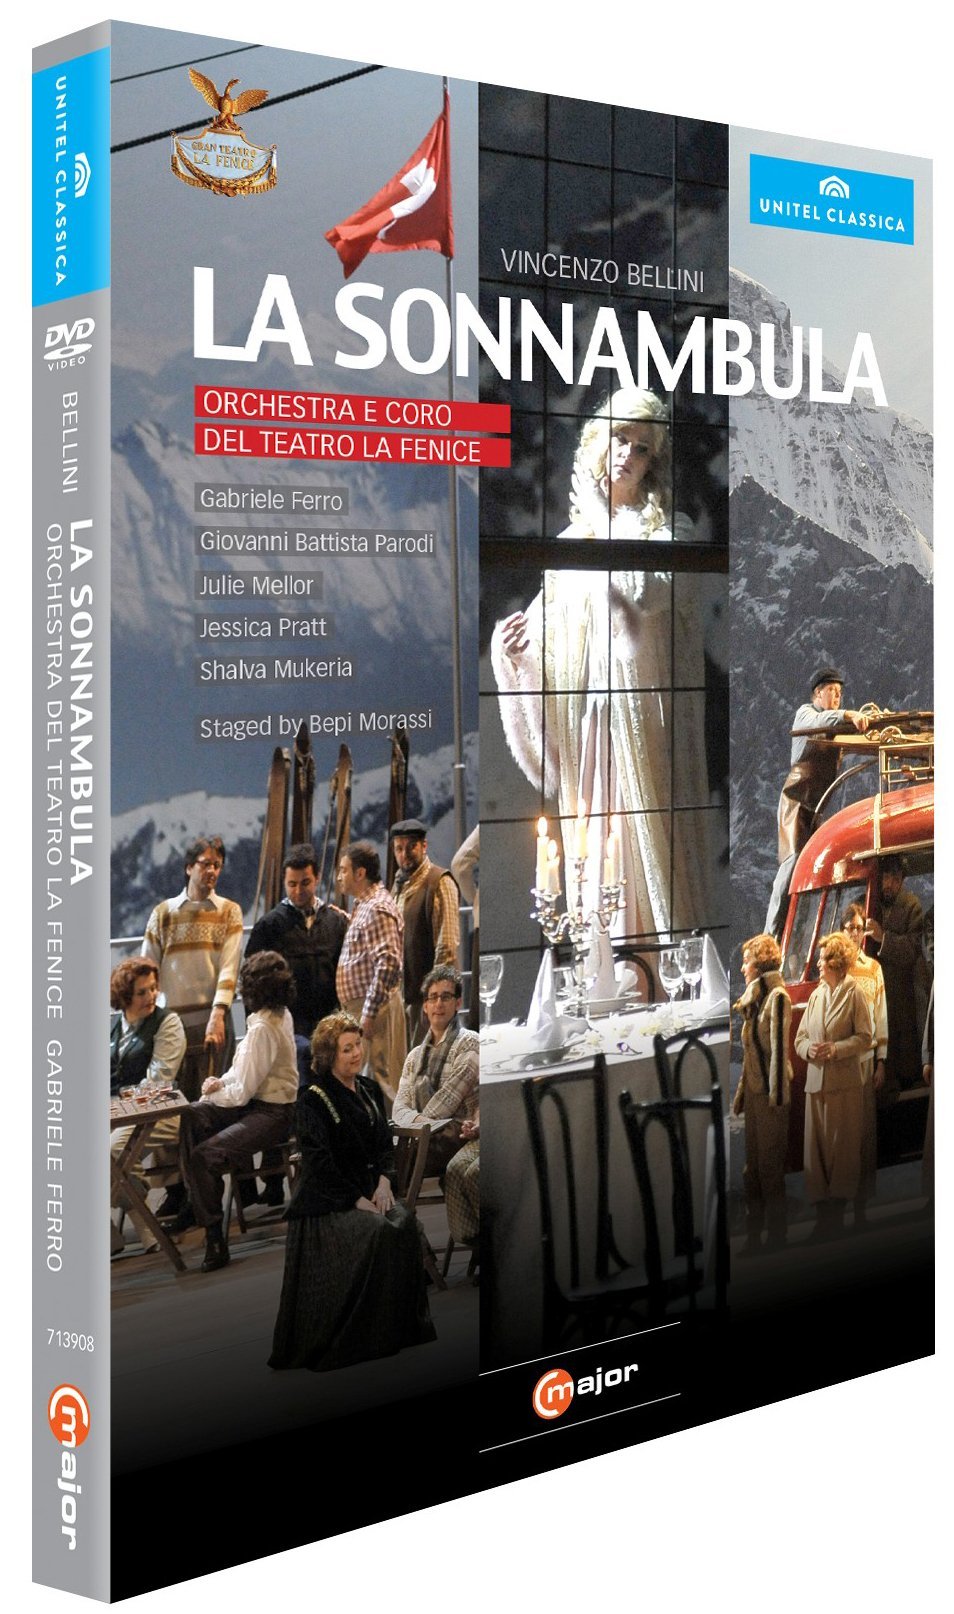 Music Dvd Vincenzo Bellini - La Sonnambula NUOVO SIGILLATO, EDIZIONE DEL 11/10/2013 SUBITO DISPONIBILE